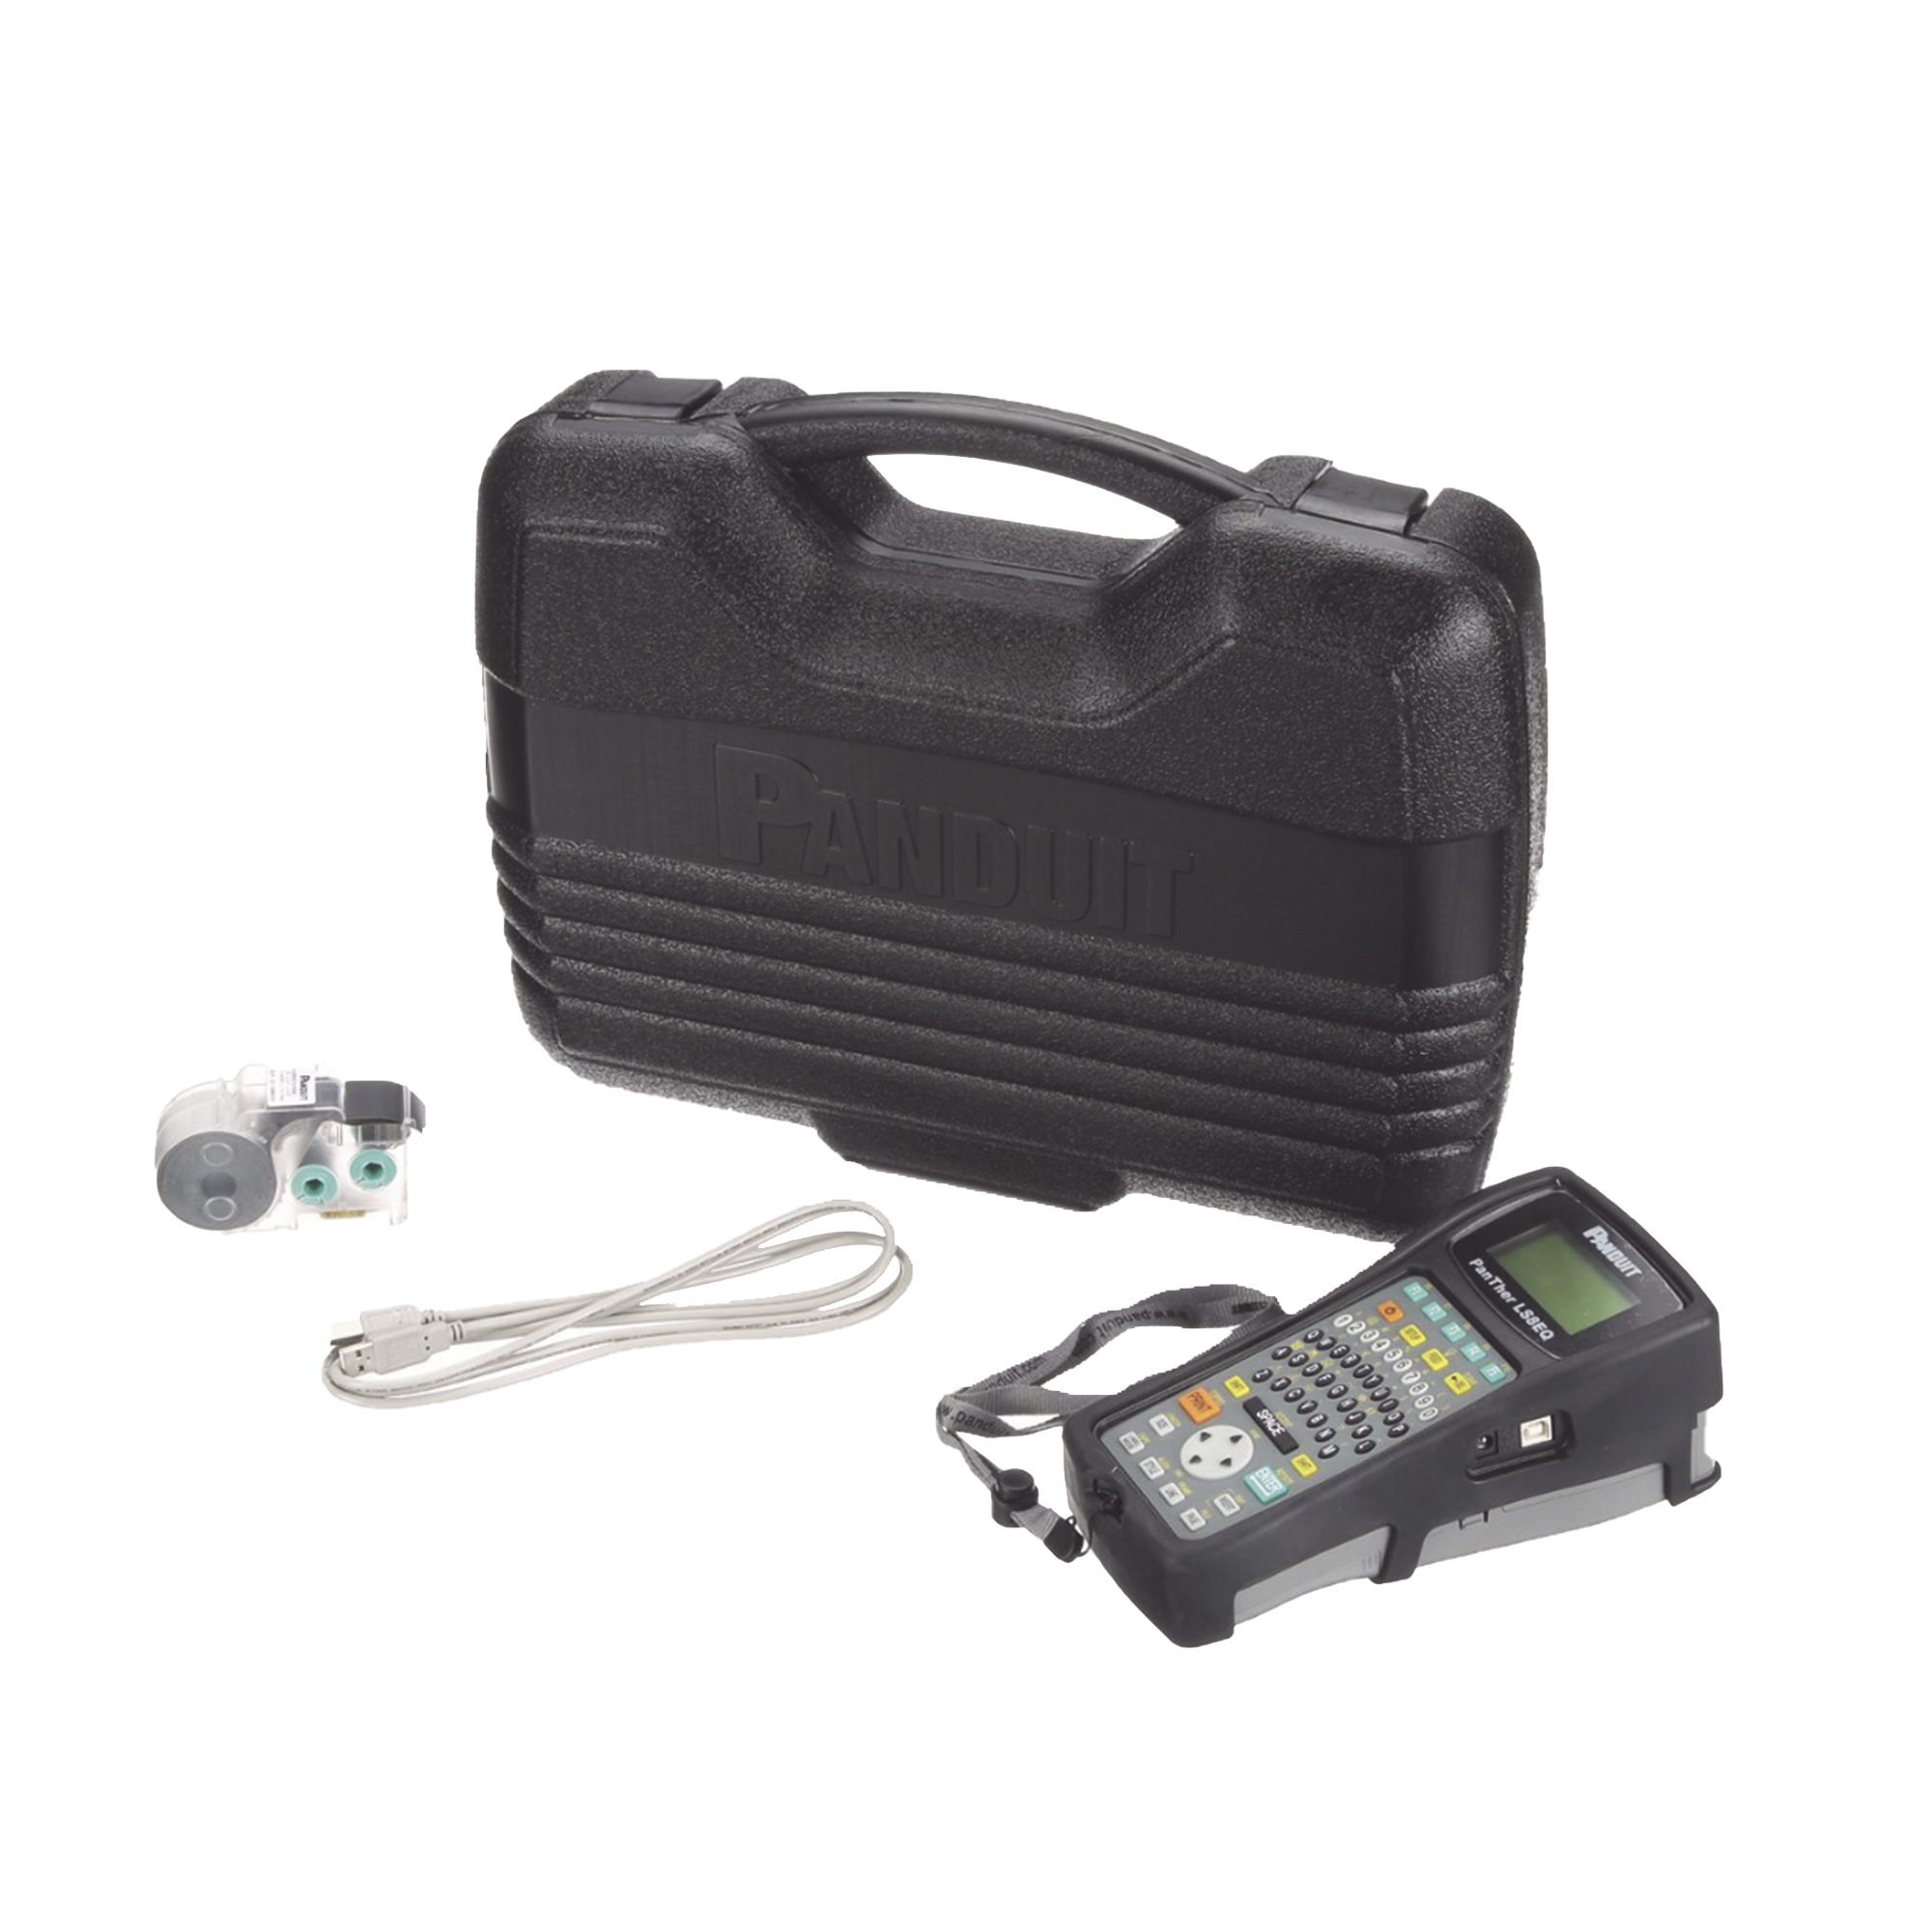 Kit de Impresora Etiquetadora, Para Identificaciónde de Cables, Componentes y Equipos de Seguridad, Con Teclado Qwerty, de Transferencia Térmica